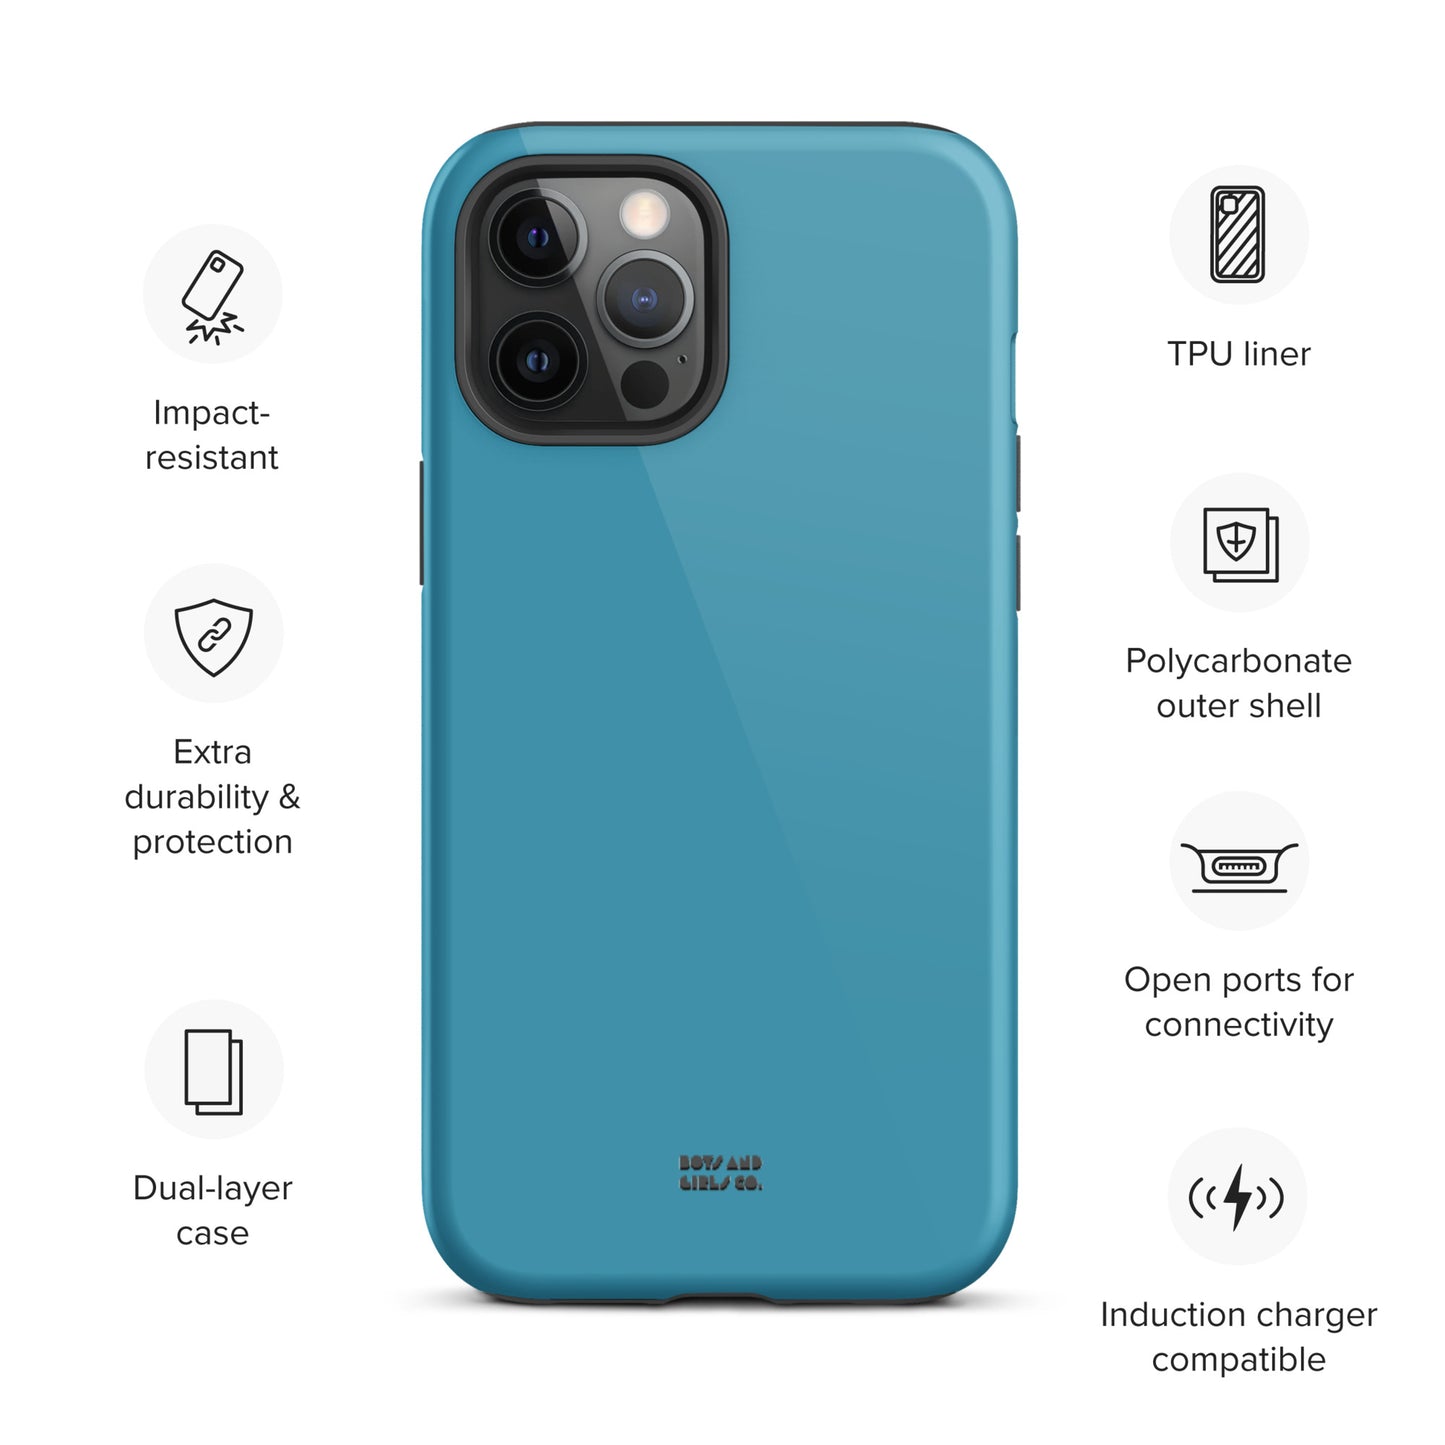 BLUE - Tough iPhone case